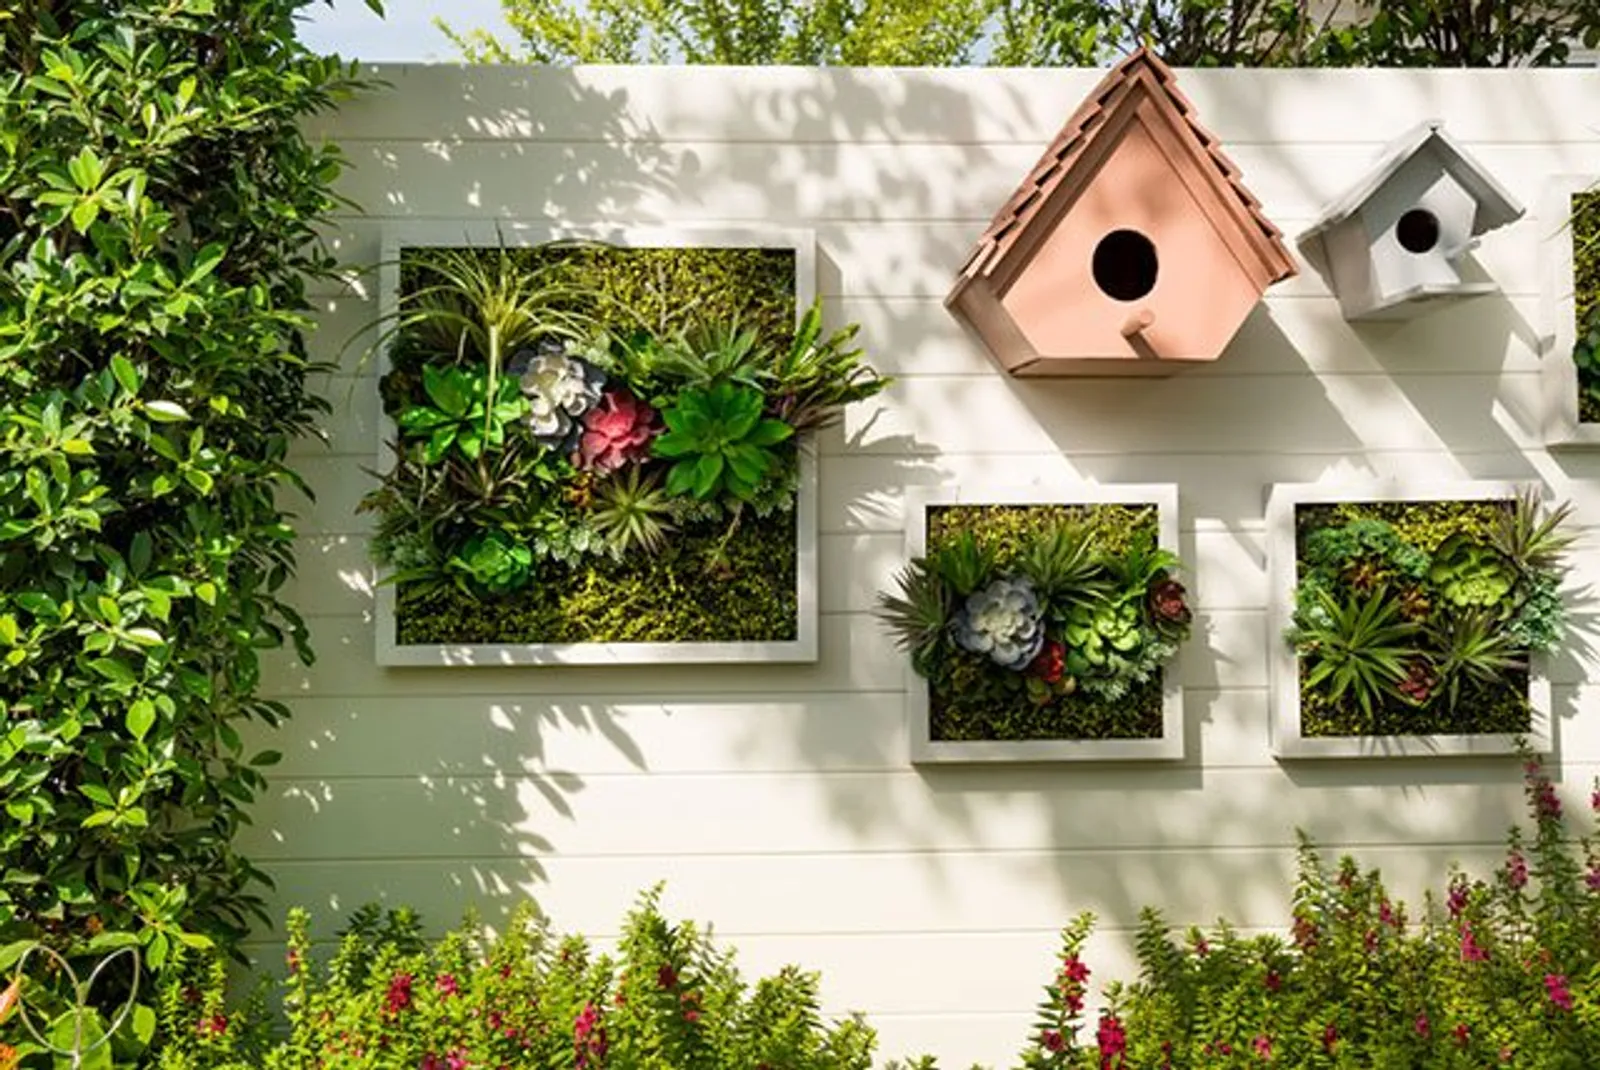 Mempercantik Halaman, Ini 9 Inspirasi Taman Minimalis Depan Rumah